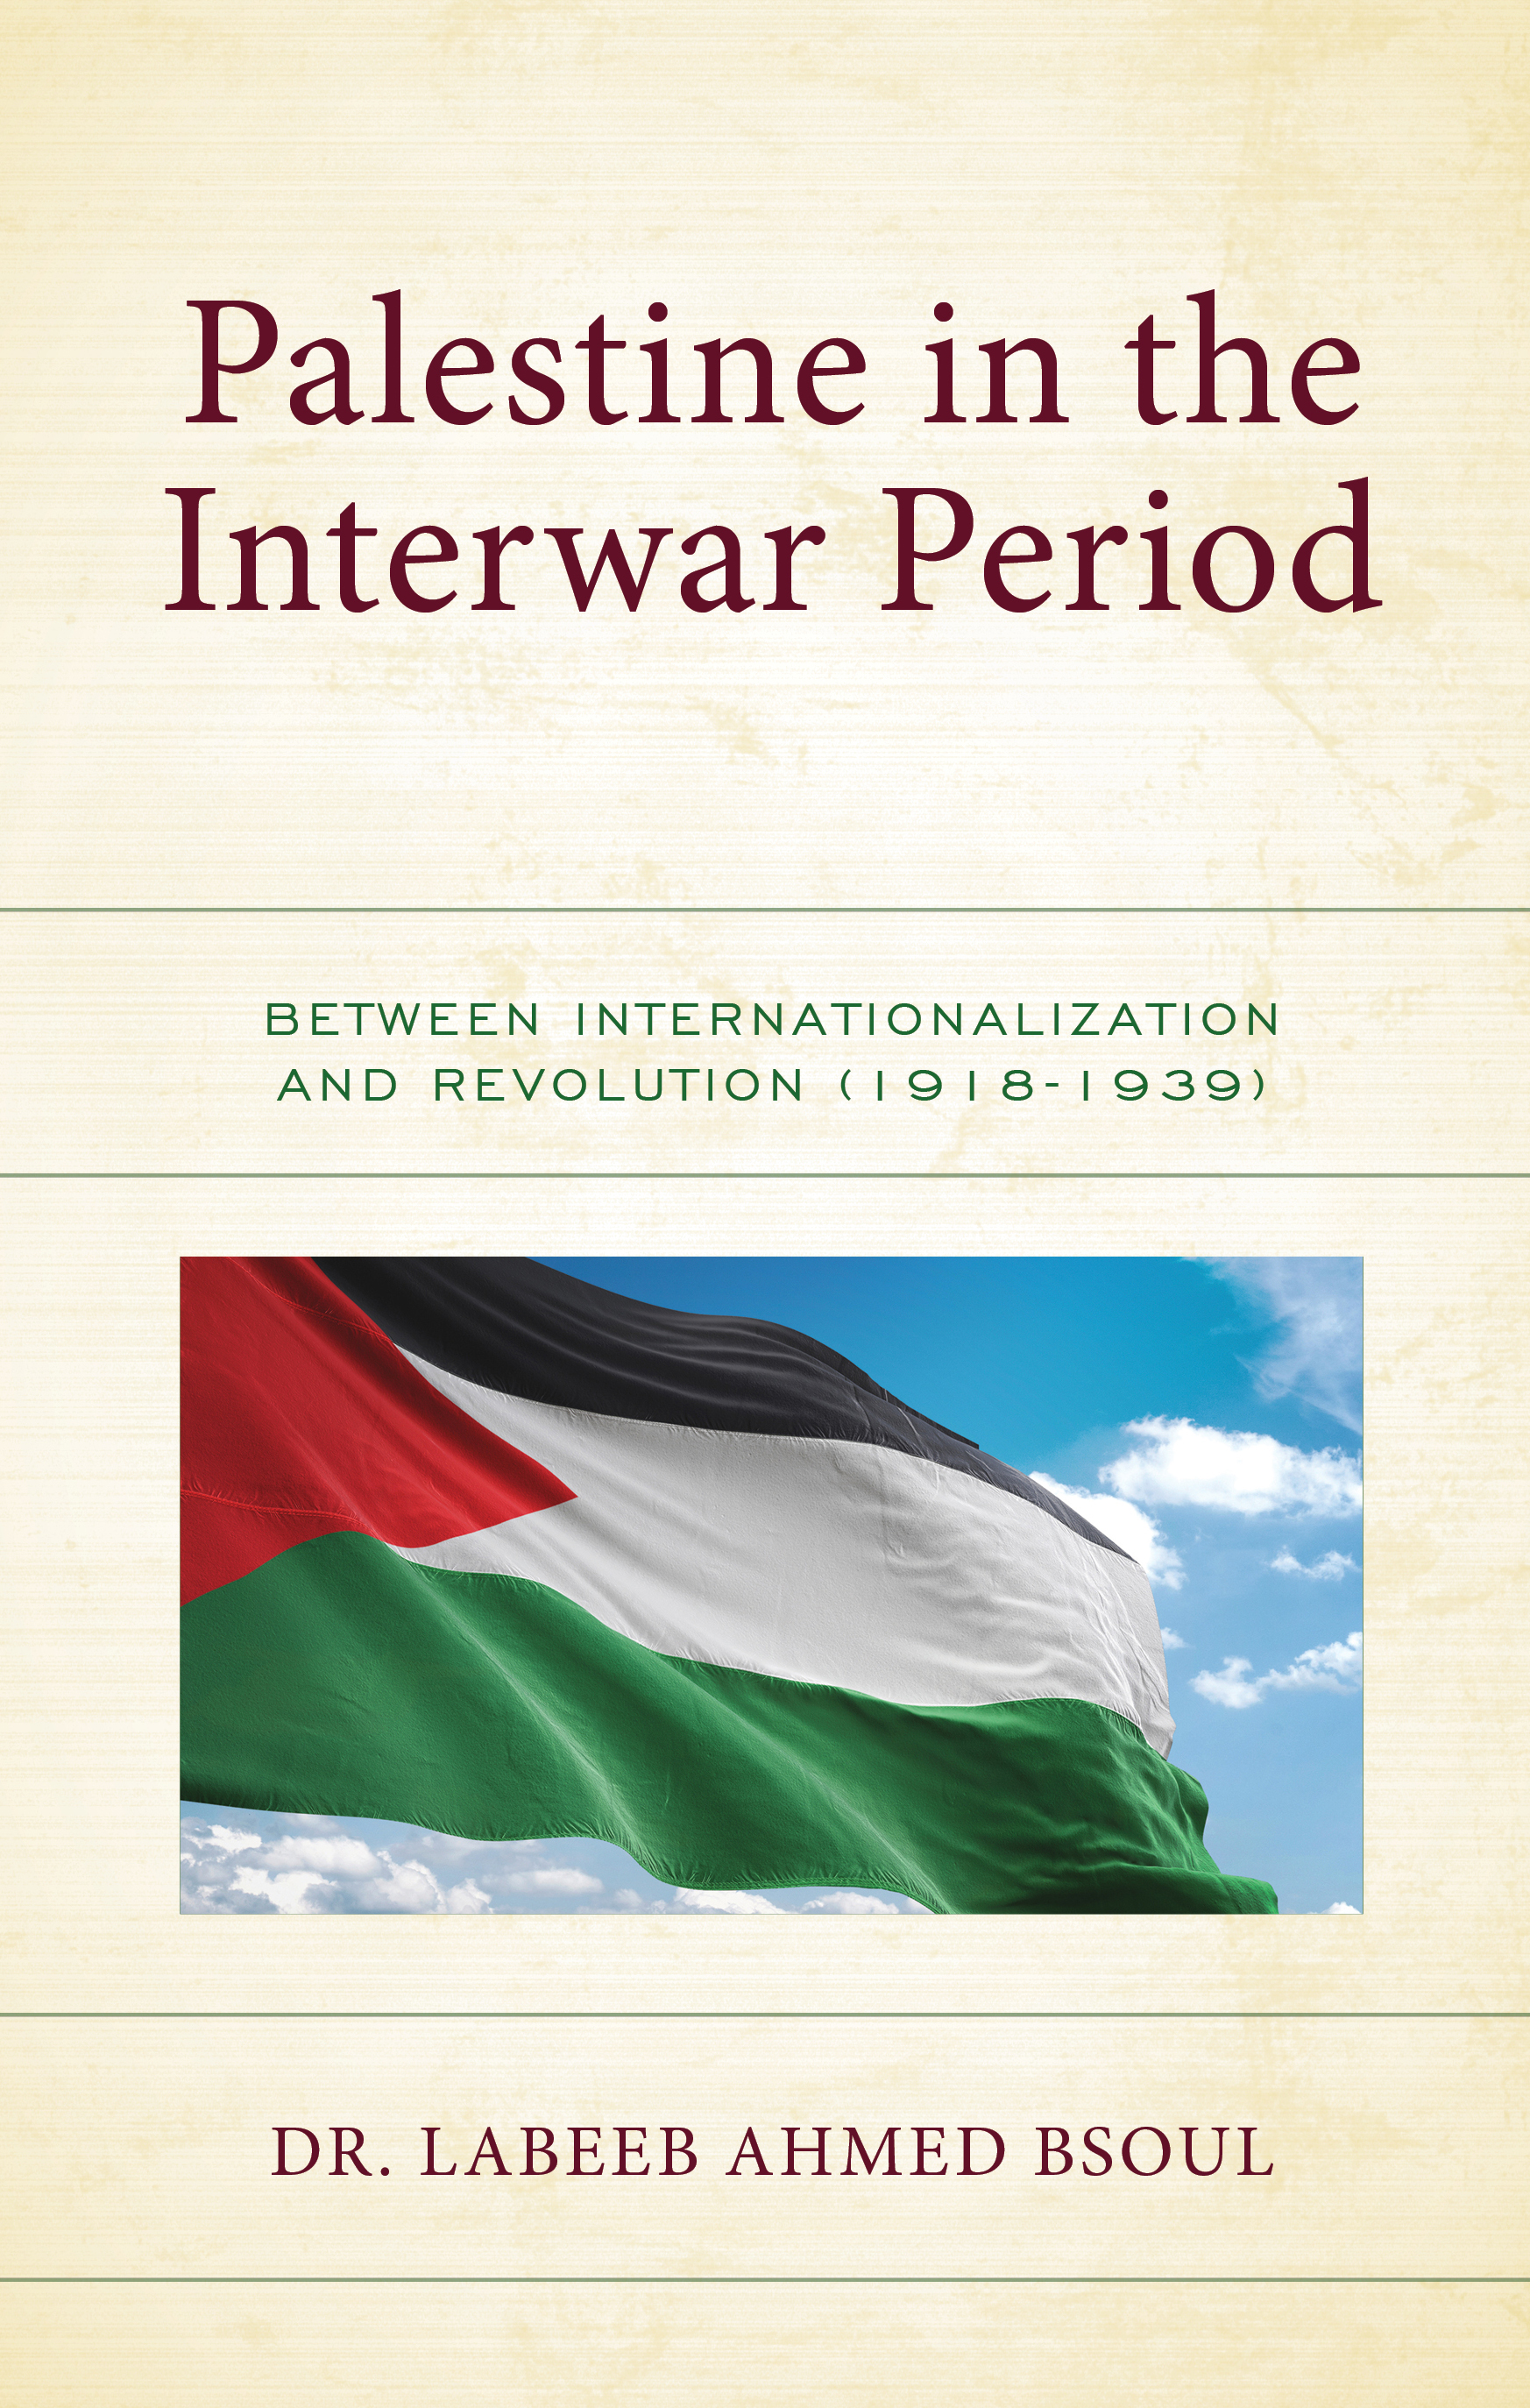 Palestine in the Interwar Period: Between Internationalization and Revolution (1918-1939)